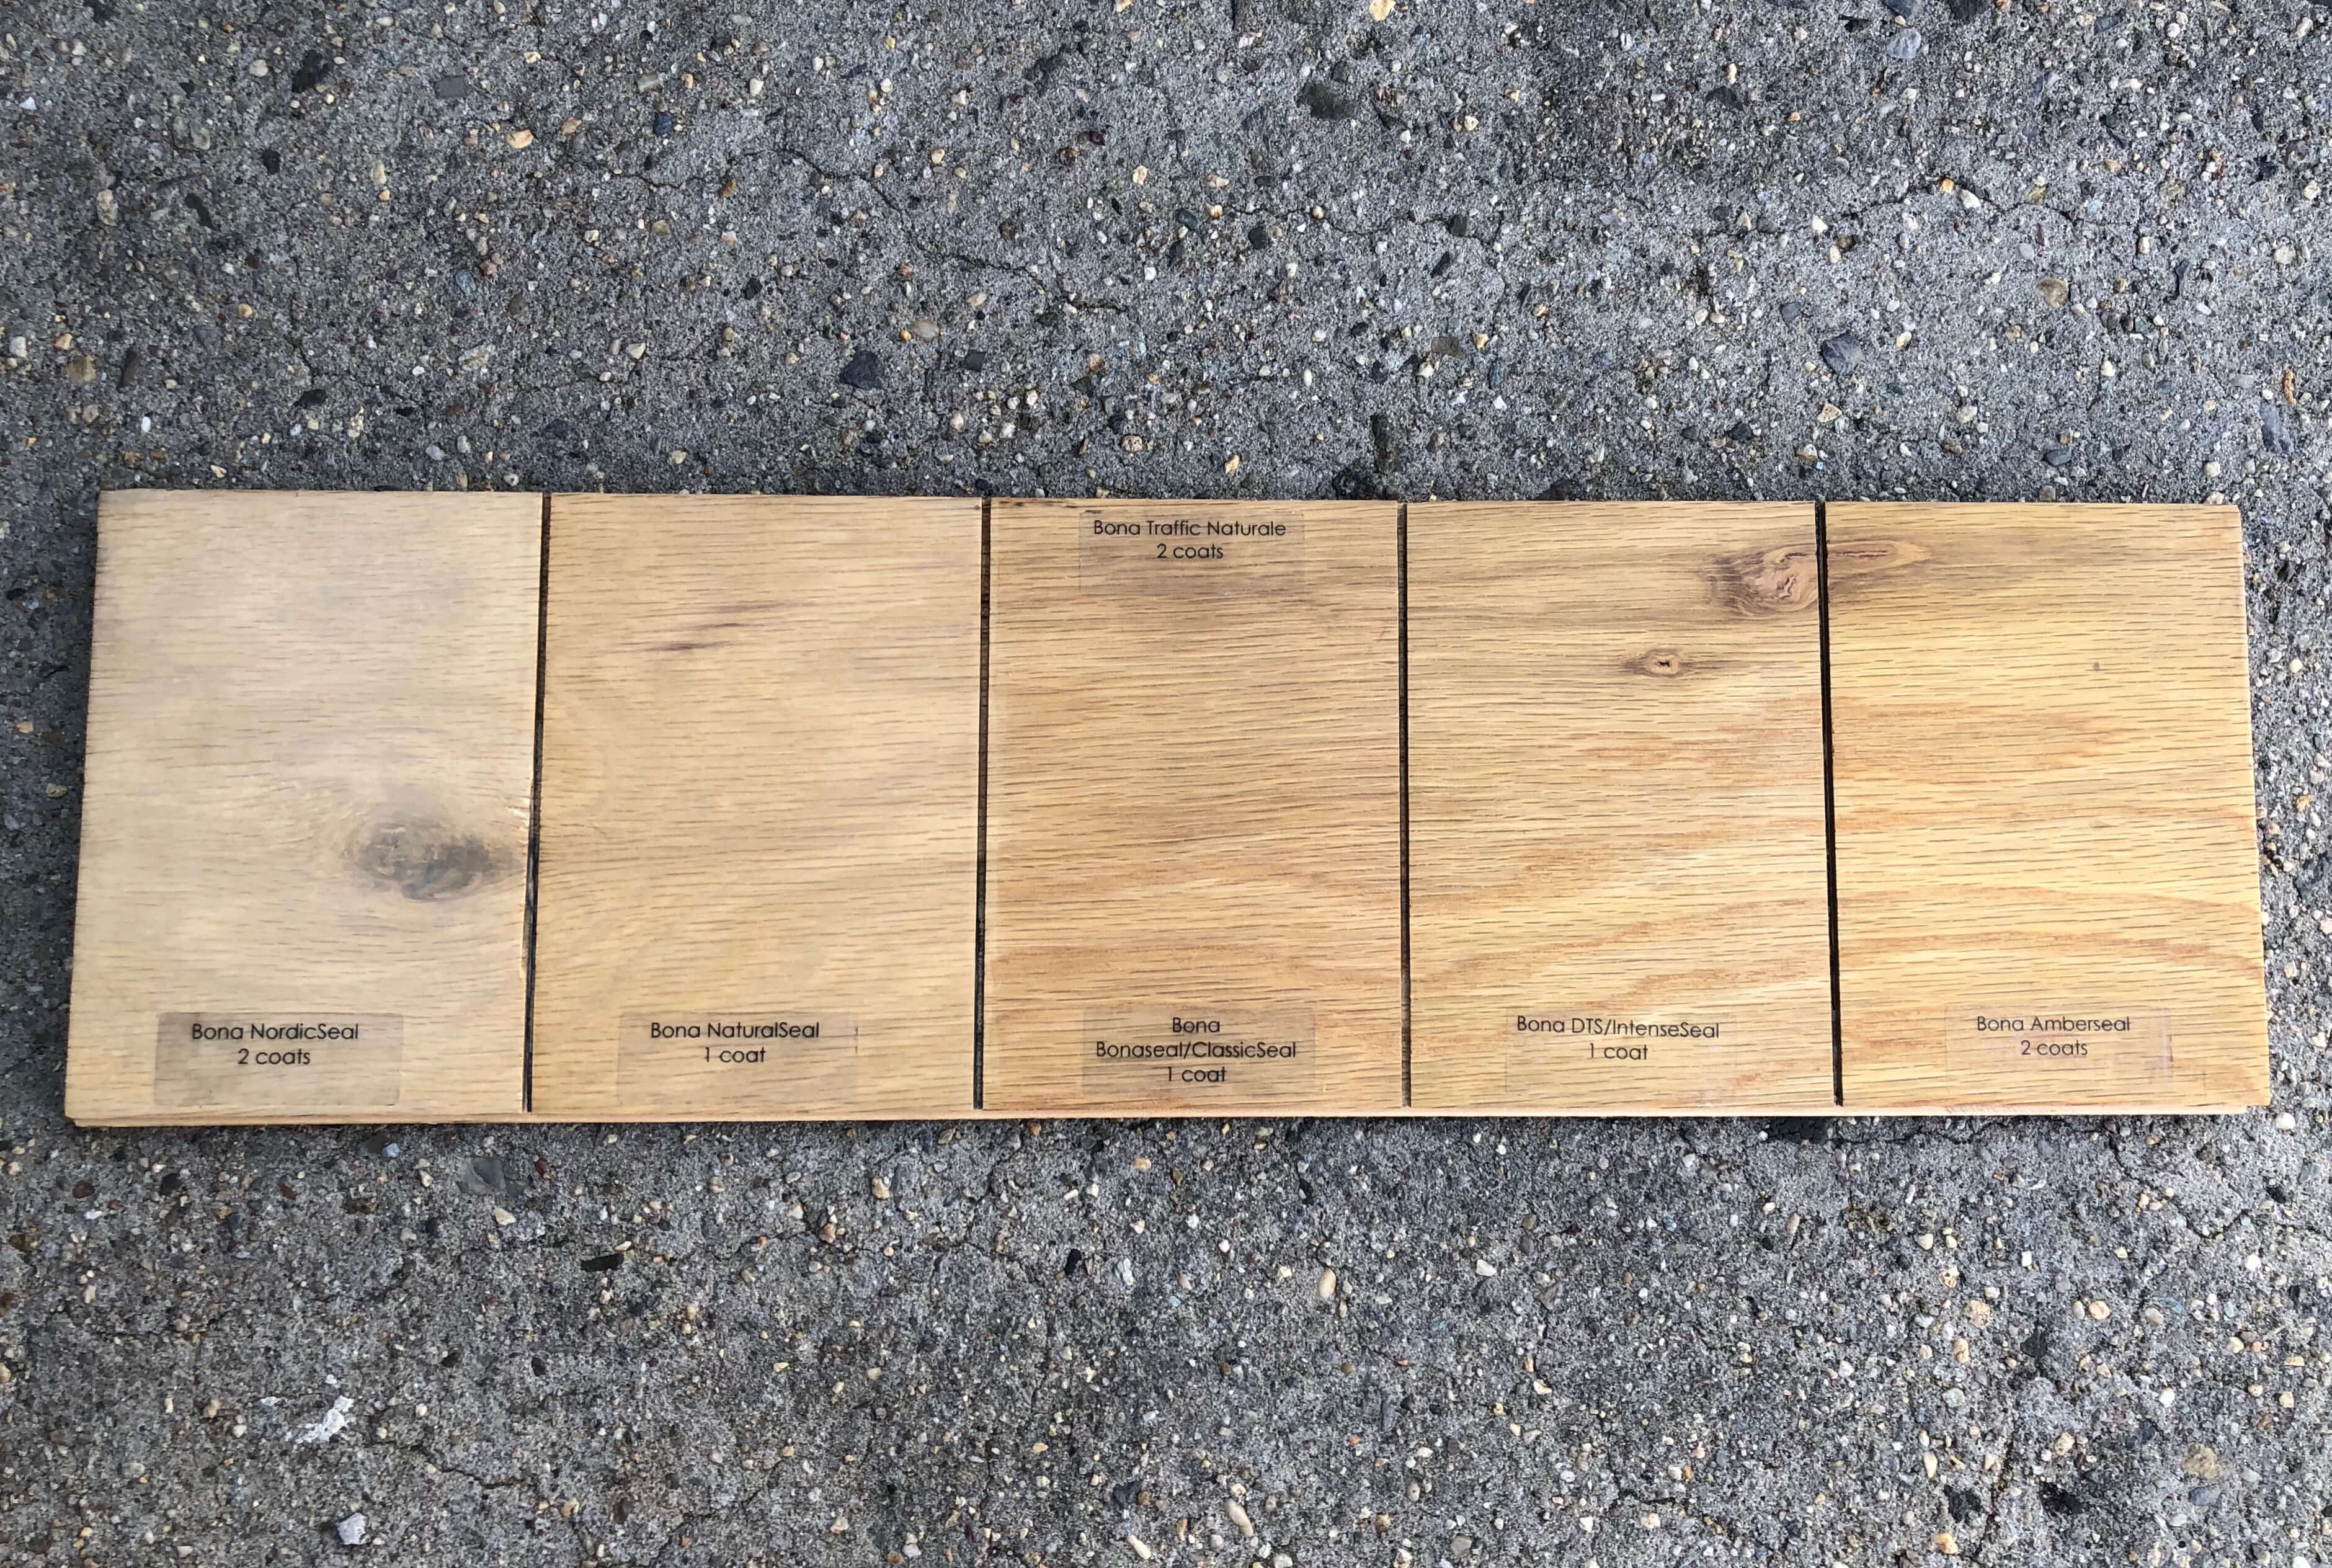 Hardwood Floors, Bona Naturale Hardwood Floor Finish